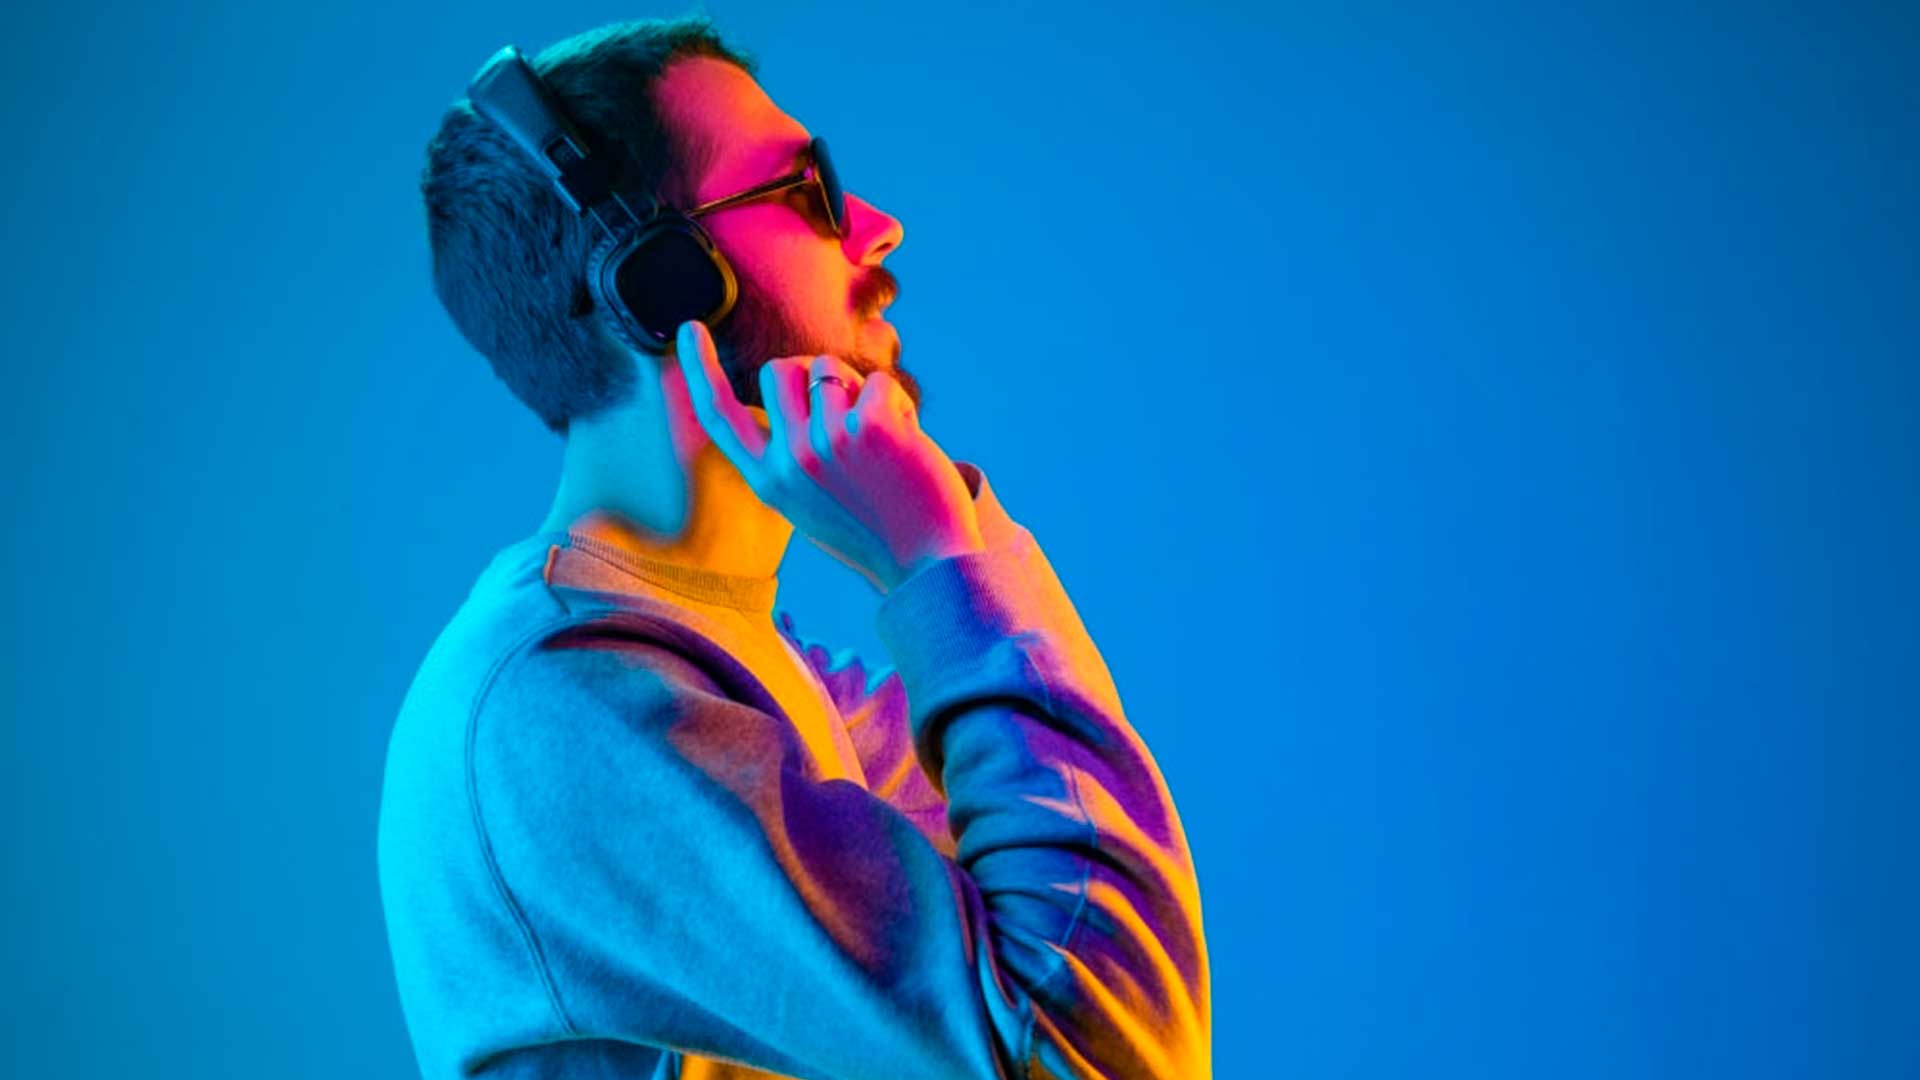 psicologiasdobrasil.com.br - Pesquisa aponta ligação entre preferências musicais e transtorno de personalidade borderline